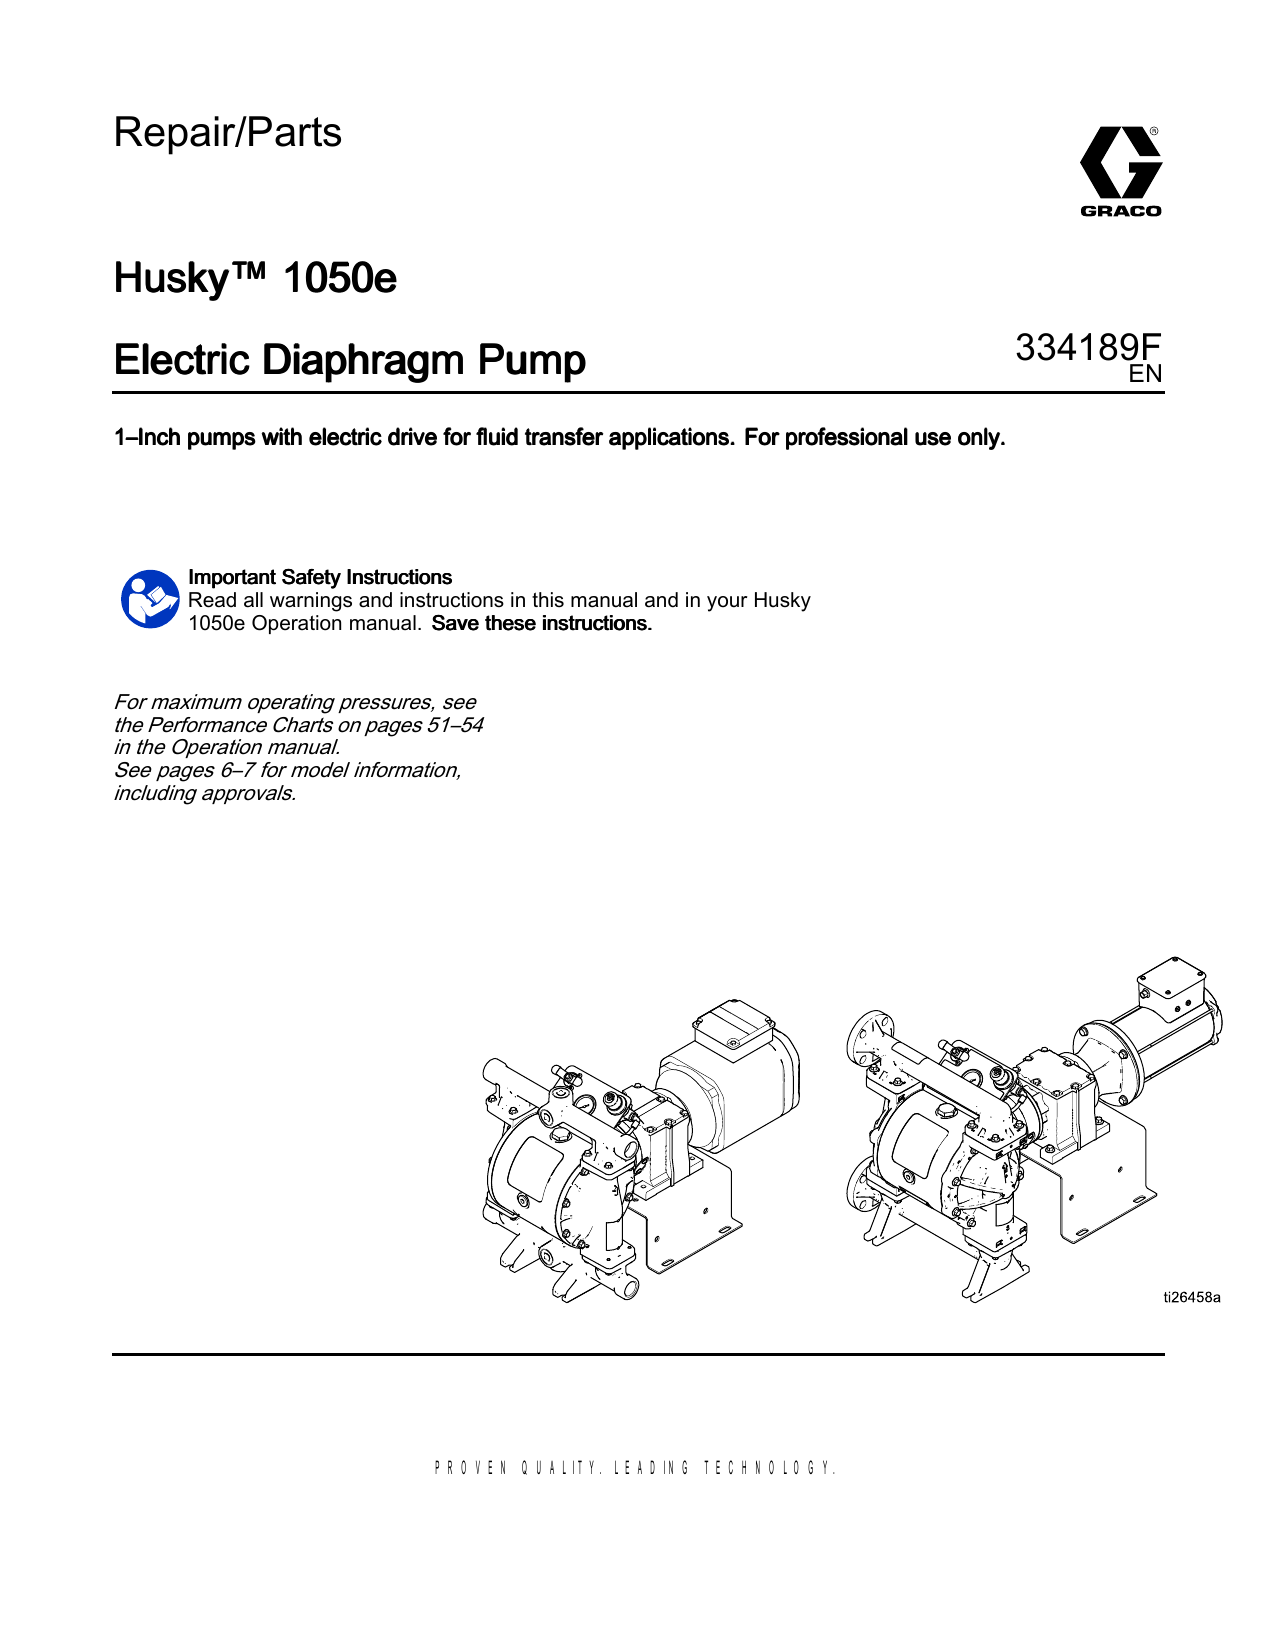 Husky 2150e 2 in. (51 mm) AL electric diaphragm pump; 7.5 hp